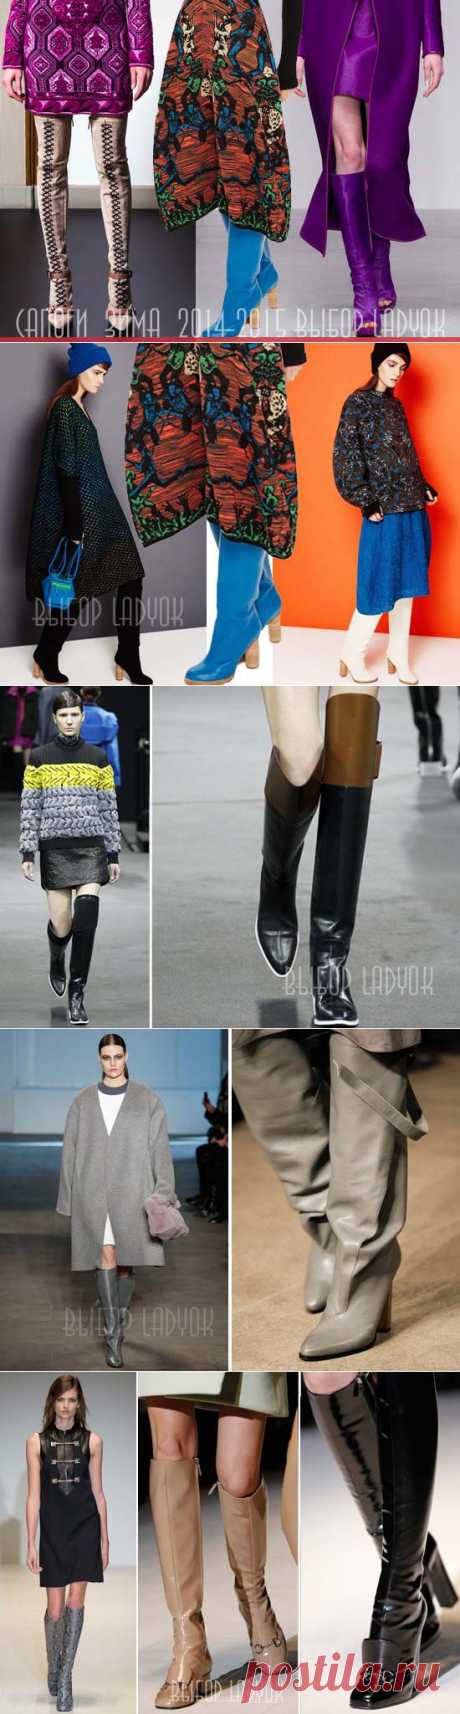 Модные женские сапоги осень-зима 2014-2015, фото основных трендов